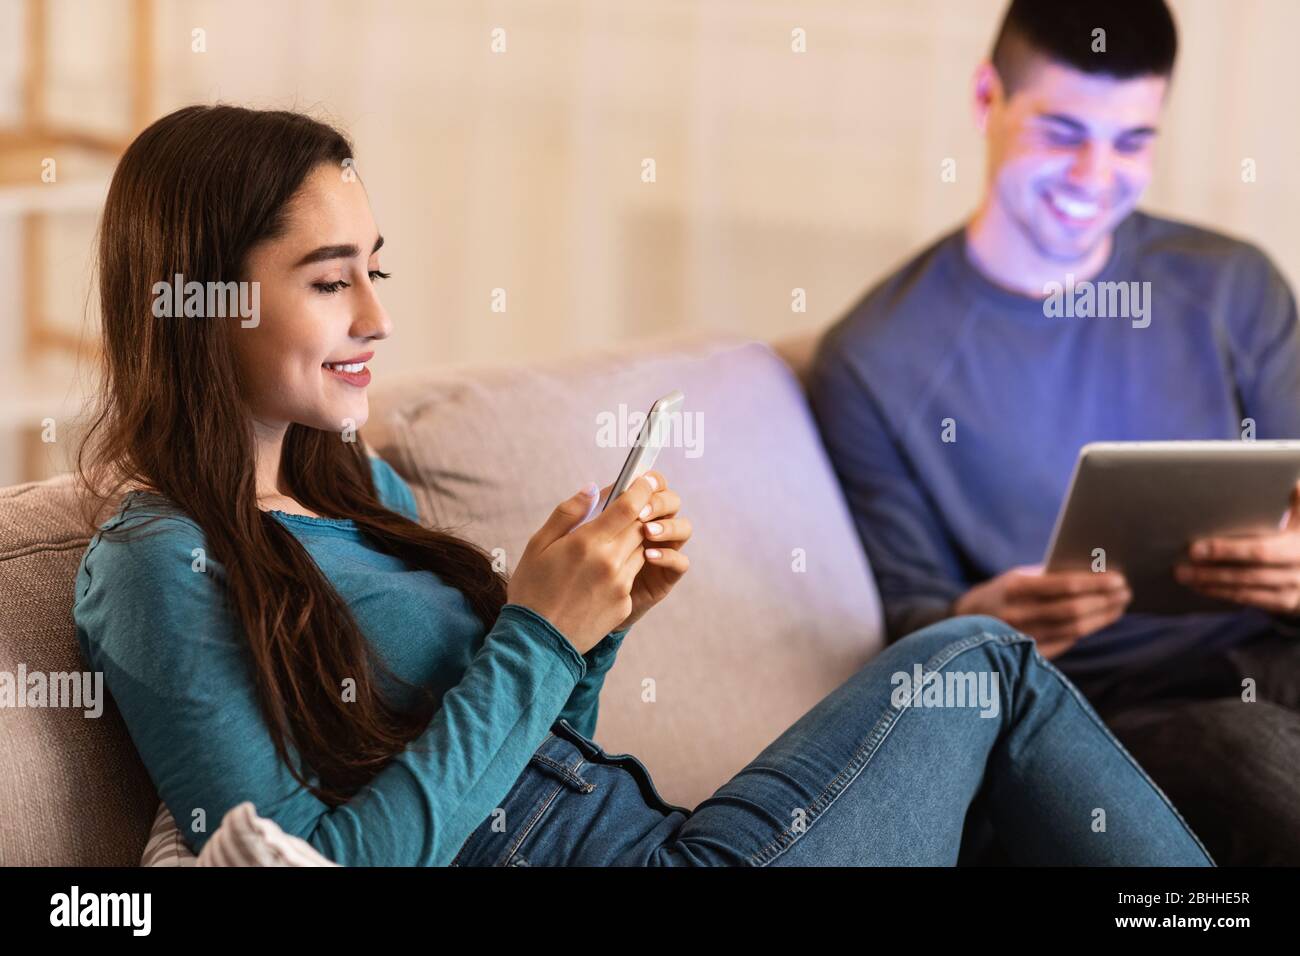 Pareja sentada en el sofá usando la tableta y el teléfono celular Foto de stock